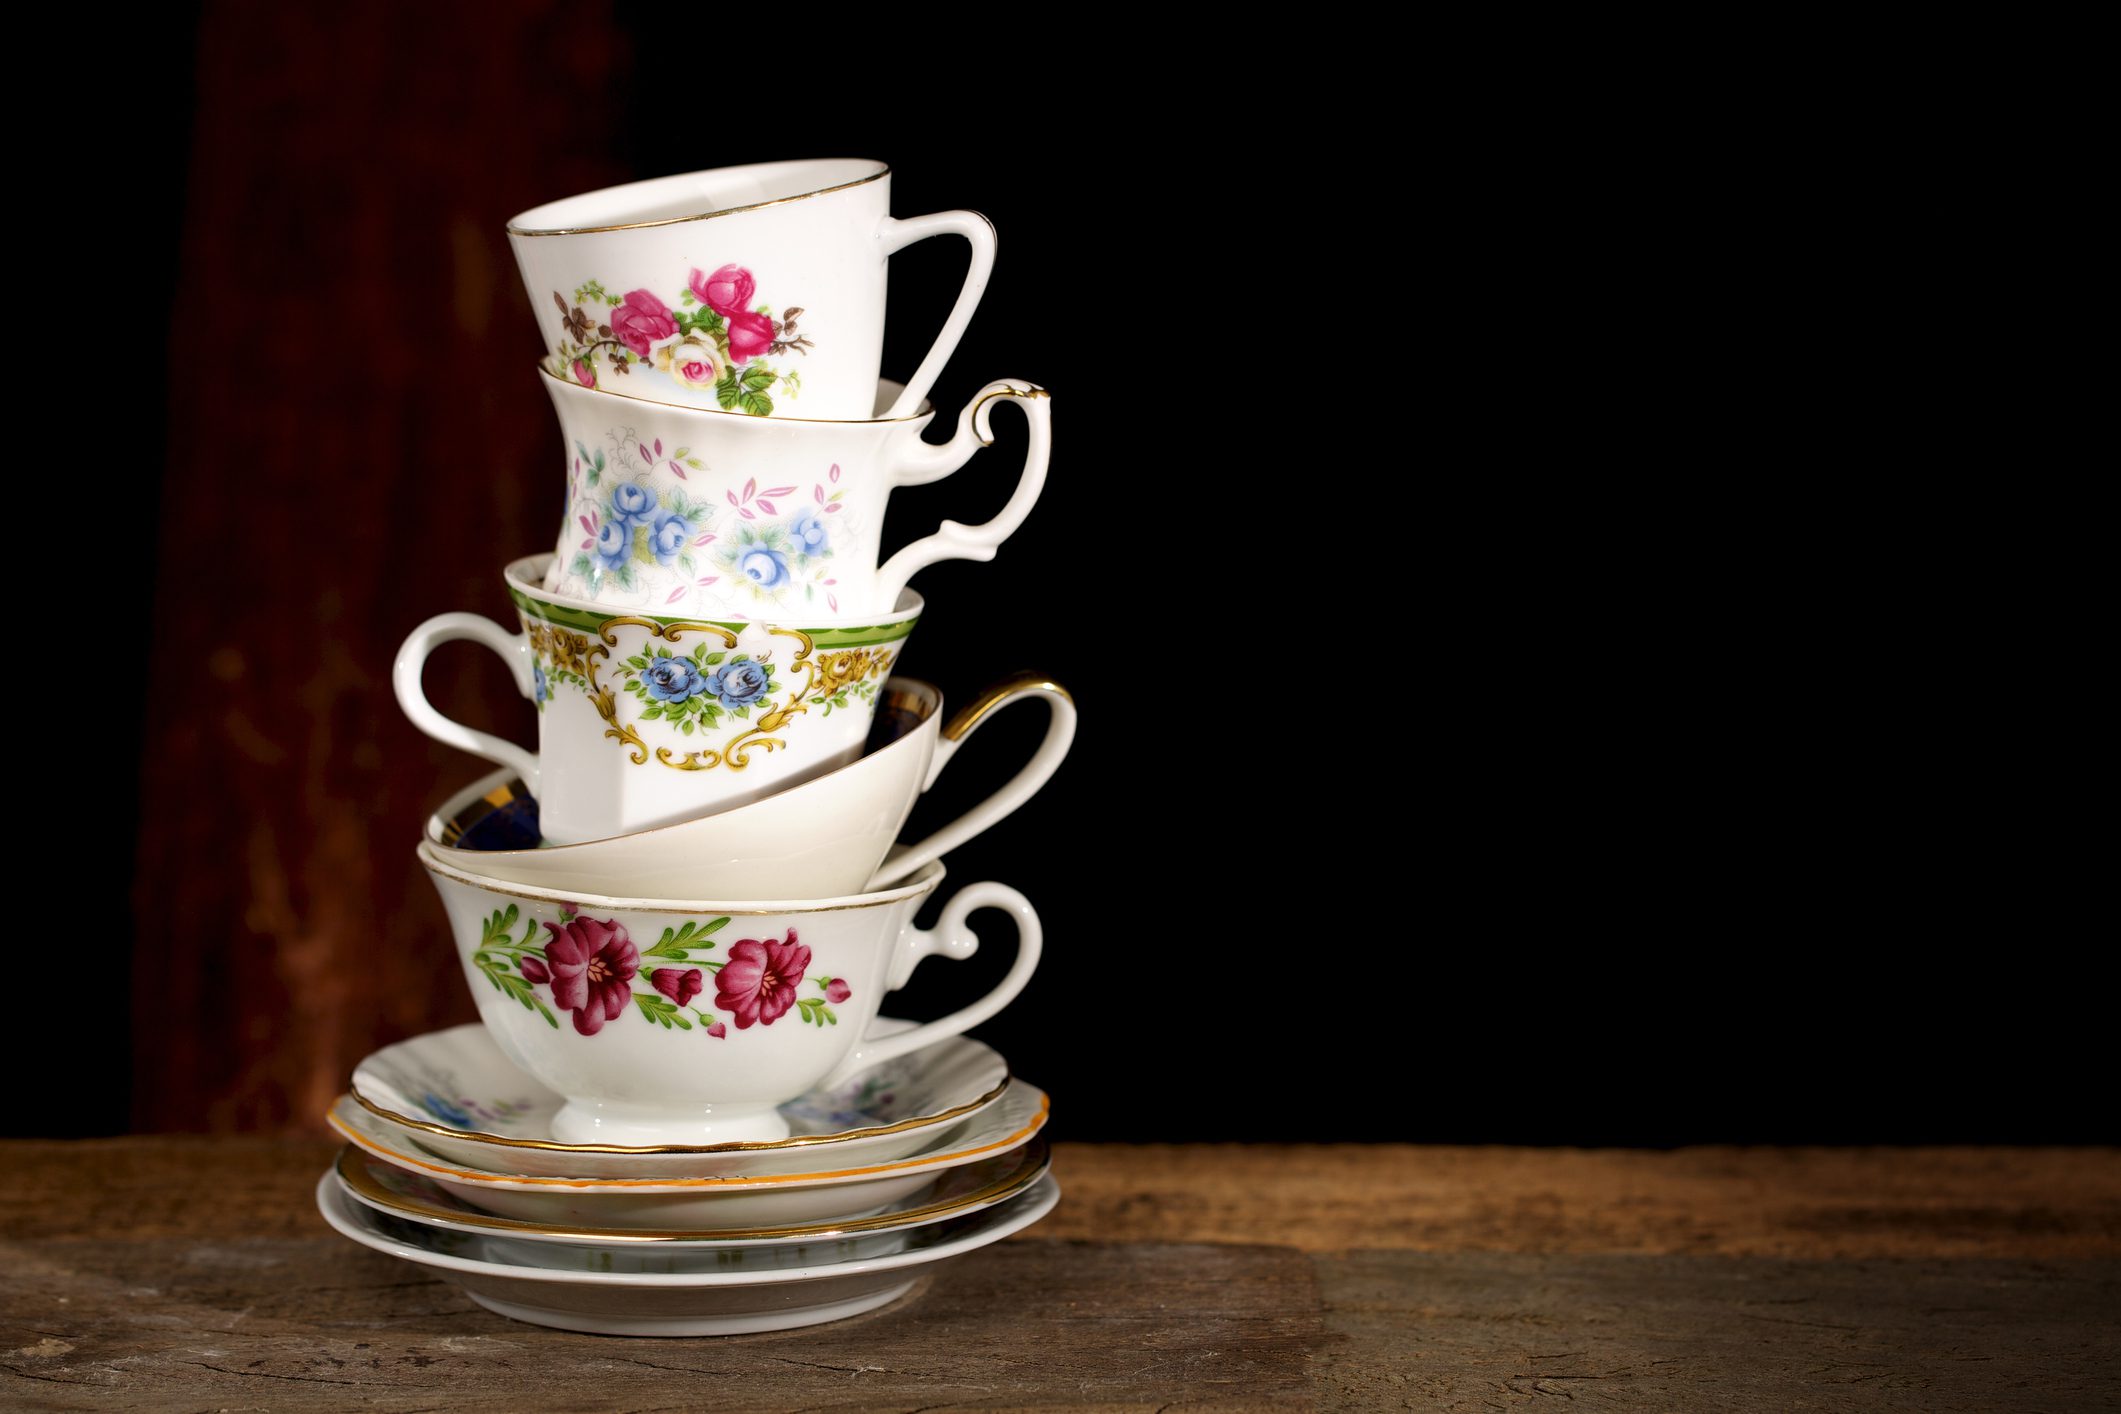 Various vintage porcelain teacups with floral decoration on dark background.